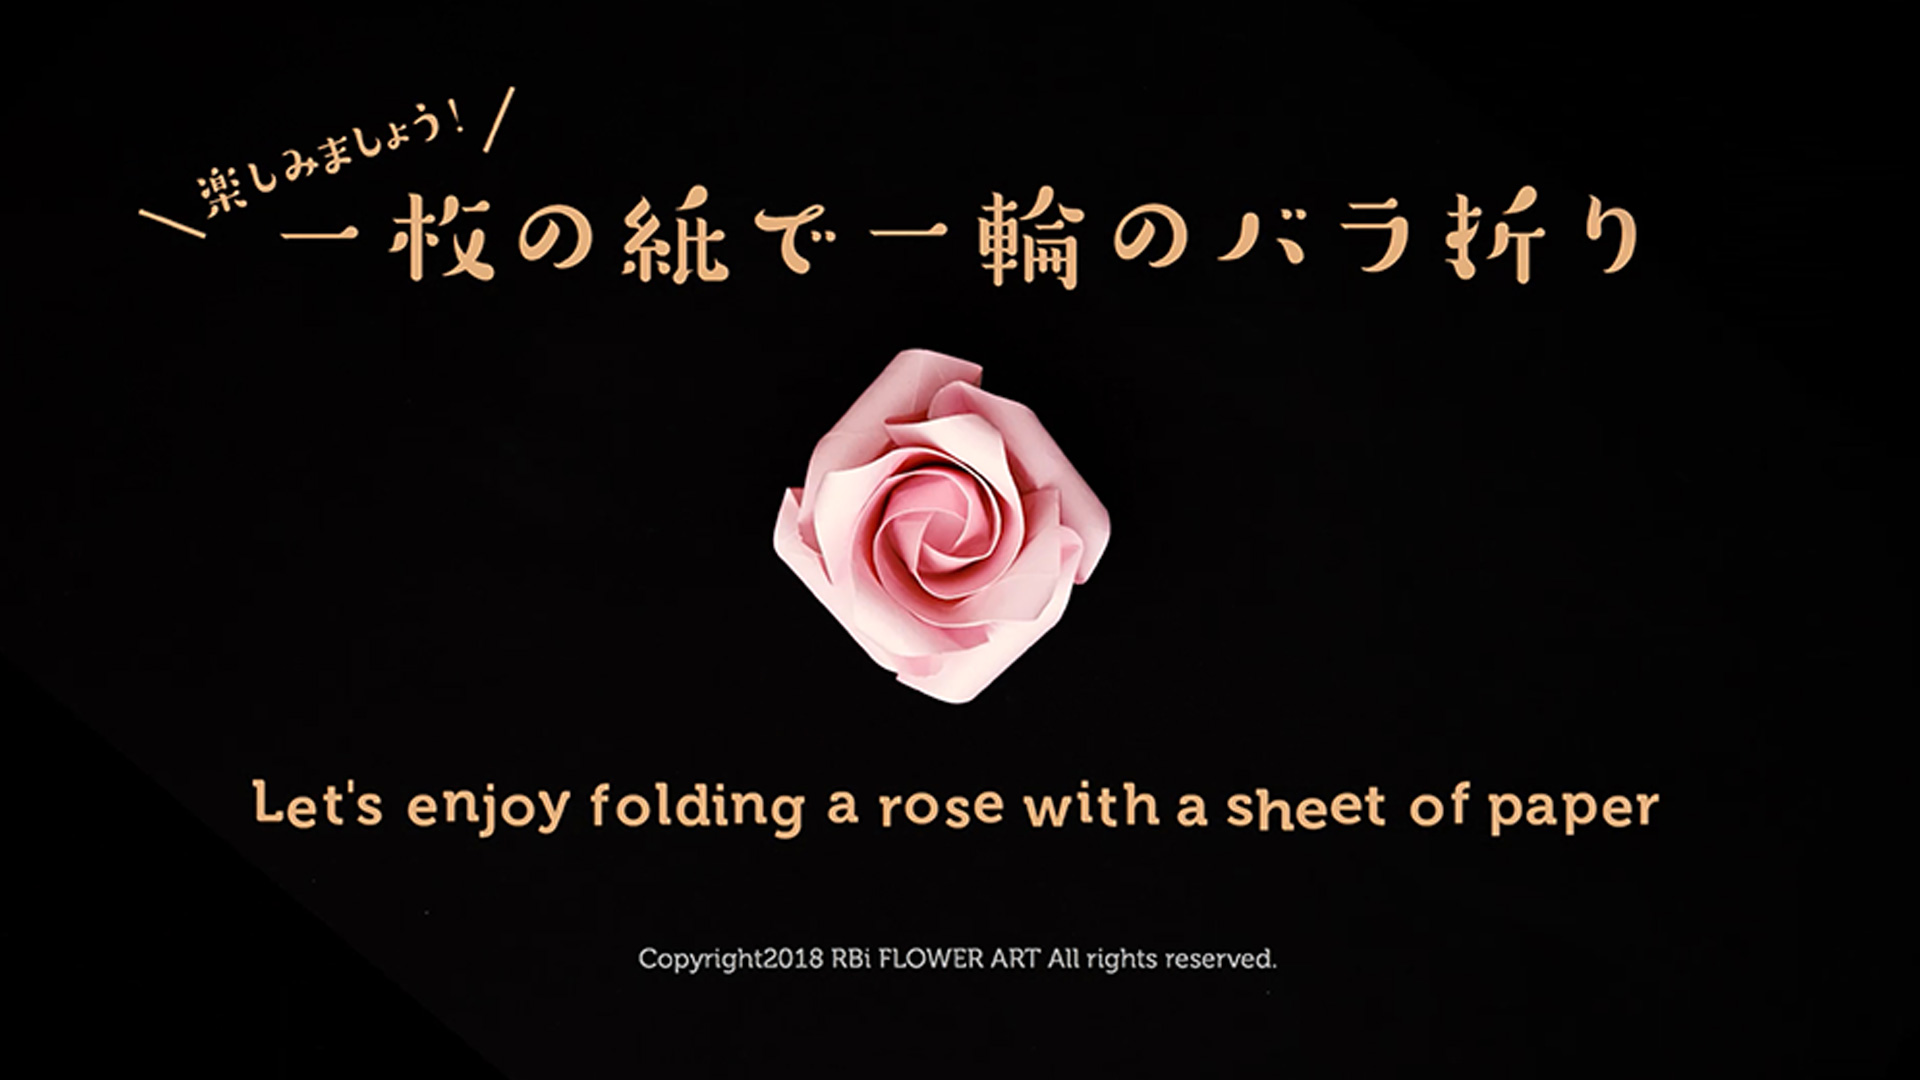 ＜販売中＞一枚の紙で一輪のバラの花を折る『バラ折り動画』